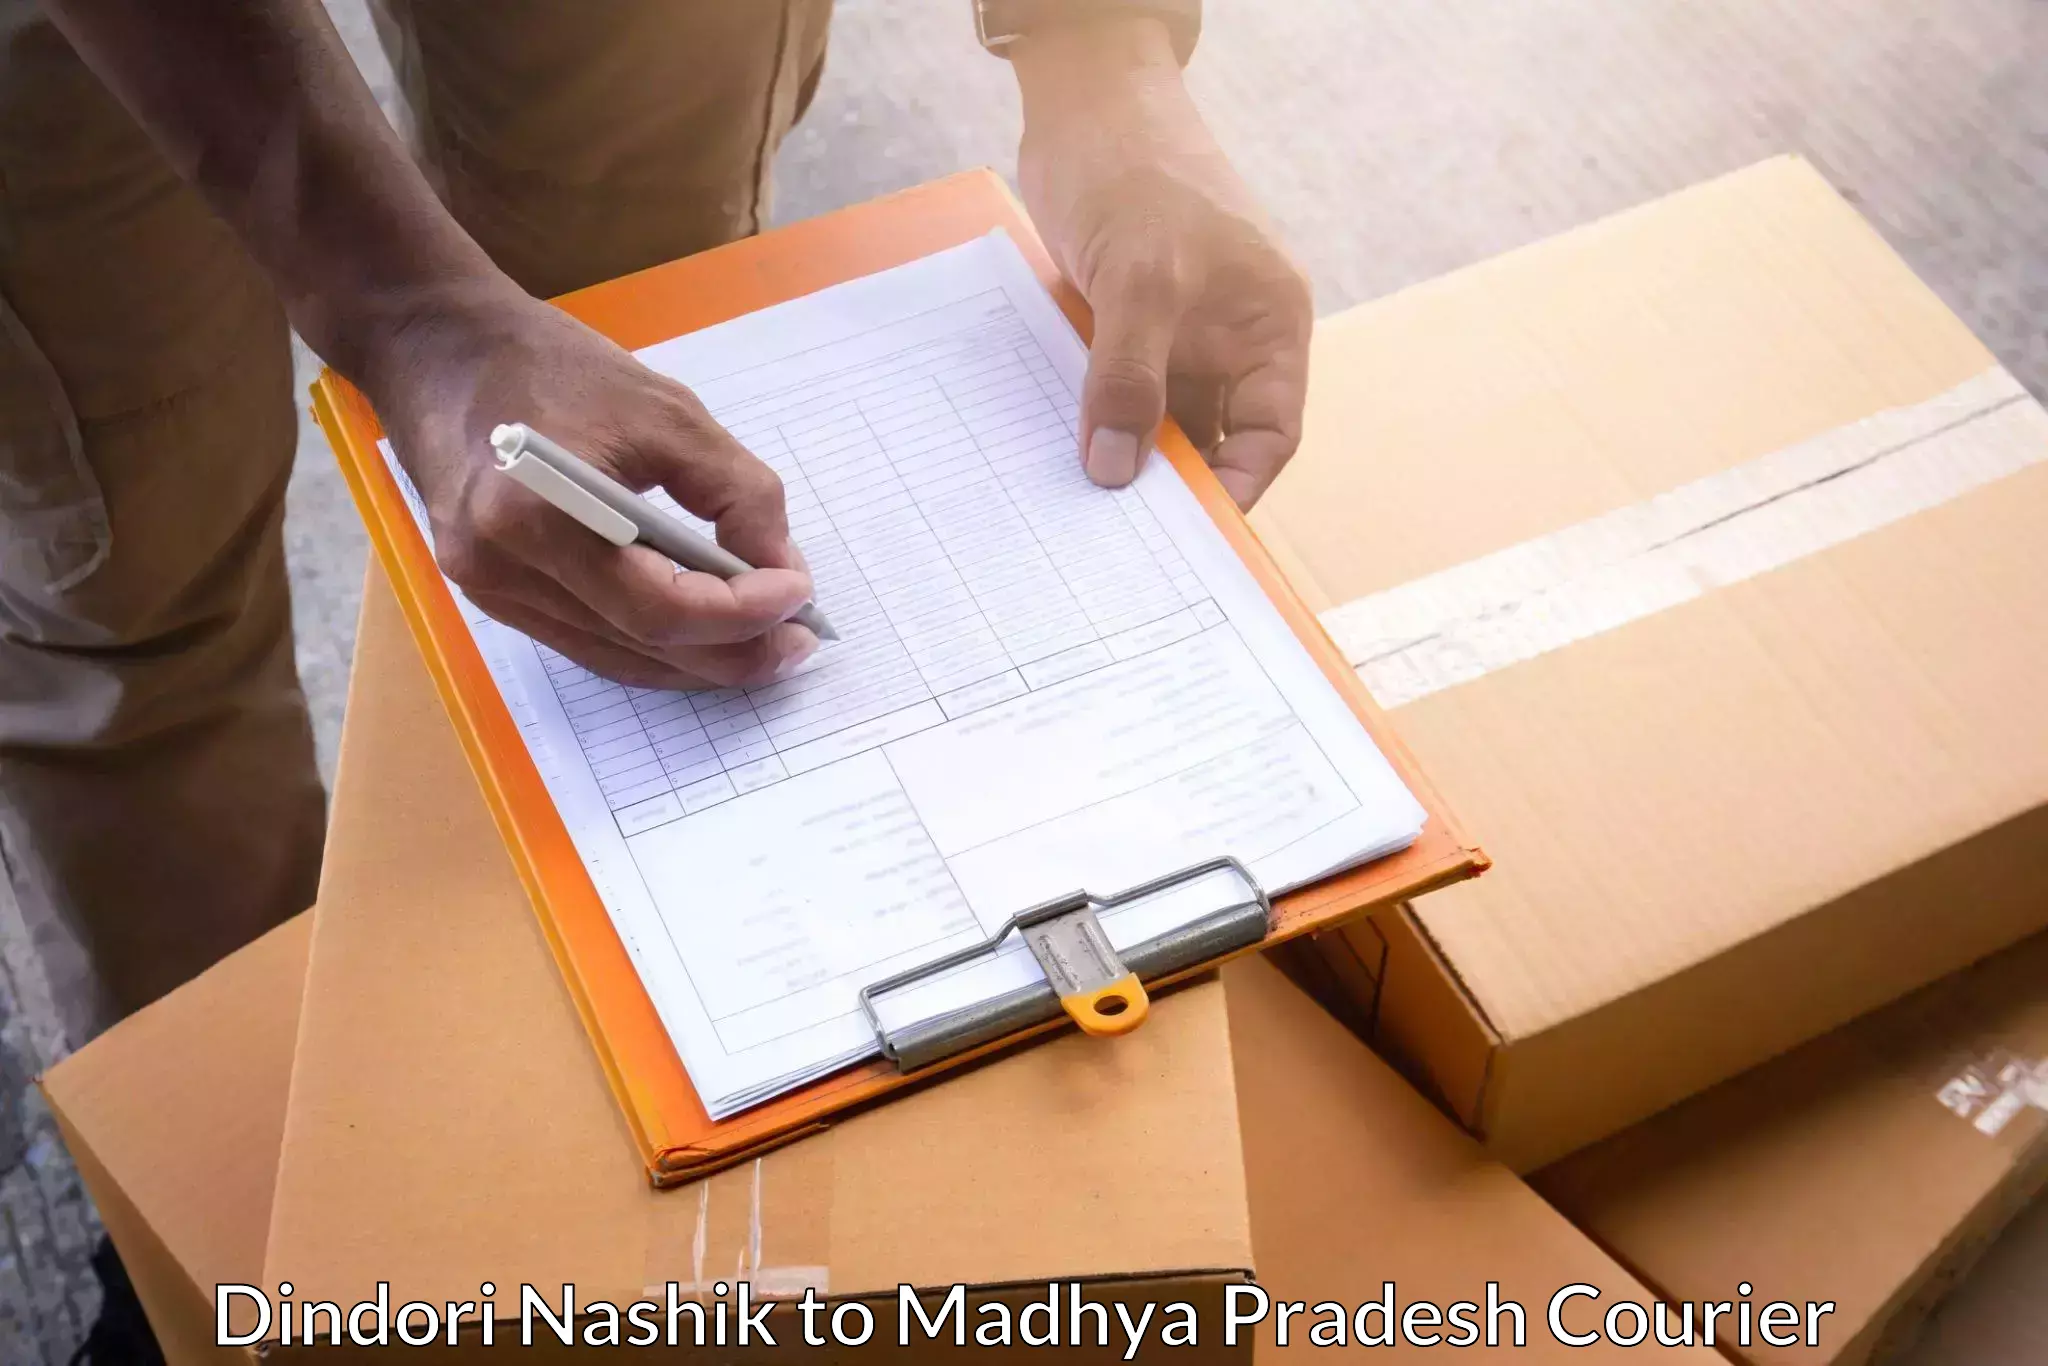 Quality courier services Dindori Nashik to Silwani